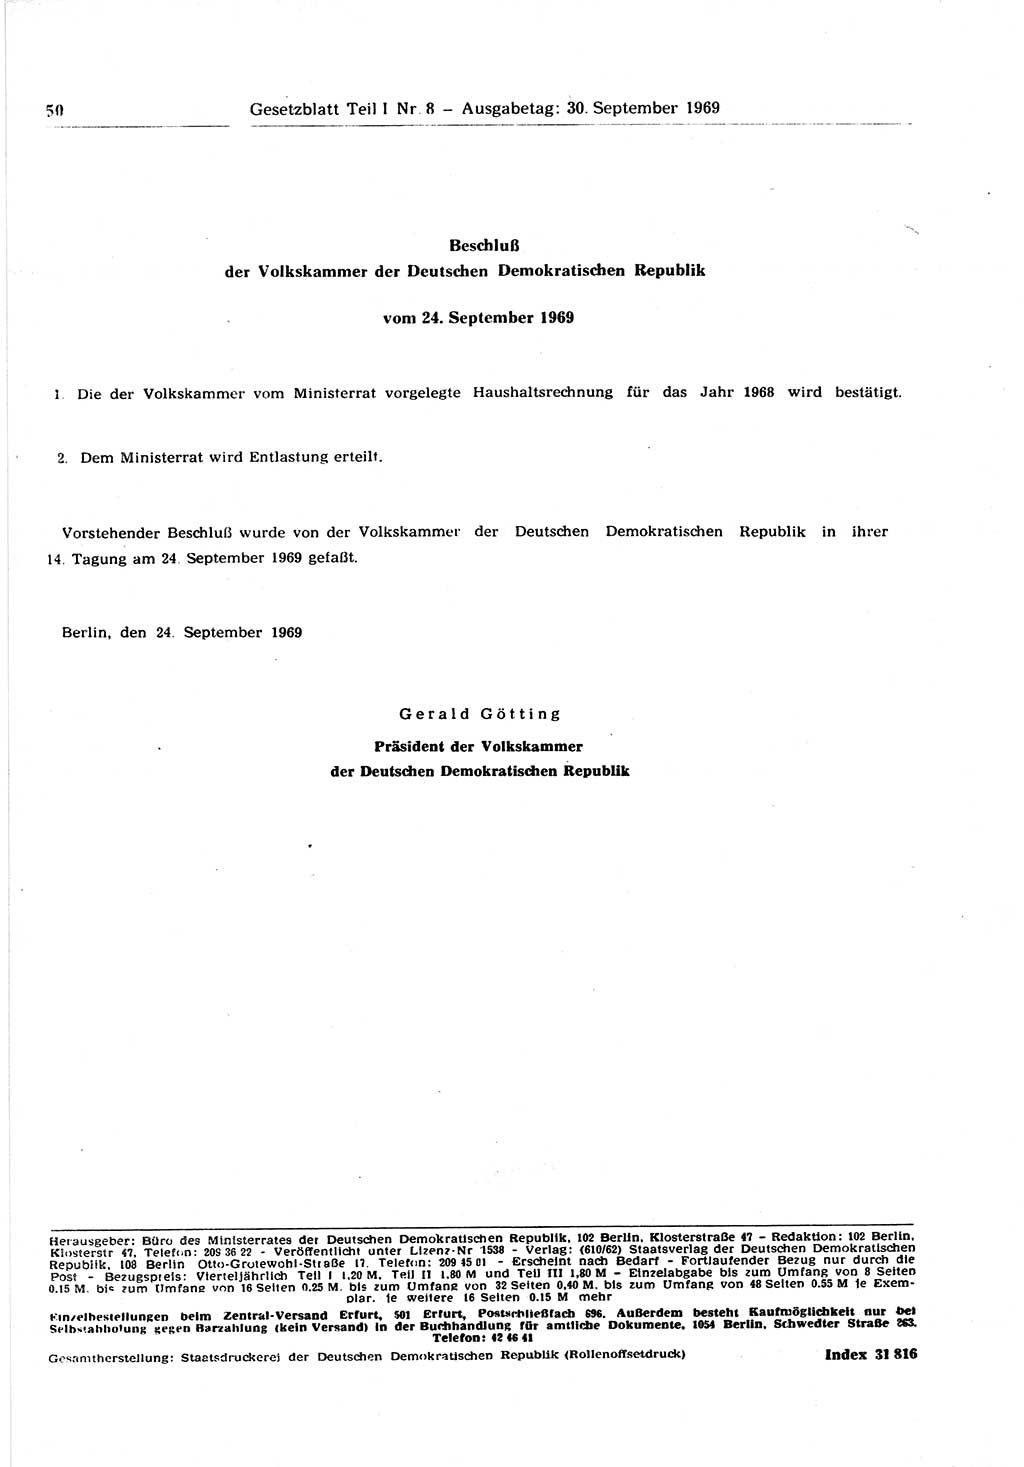 Gesetzblatt (GBl.) der Deutschen Demokratischen Republik (DDR) Teil Ⅰ 1969, Seite 50 (GBl. DDR Ⅰ 1969, S. 50)